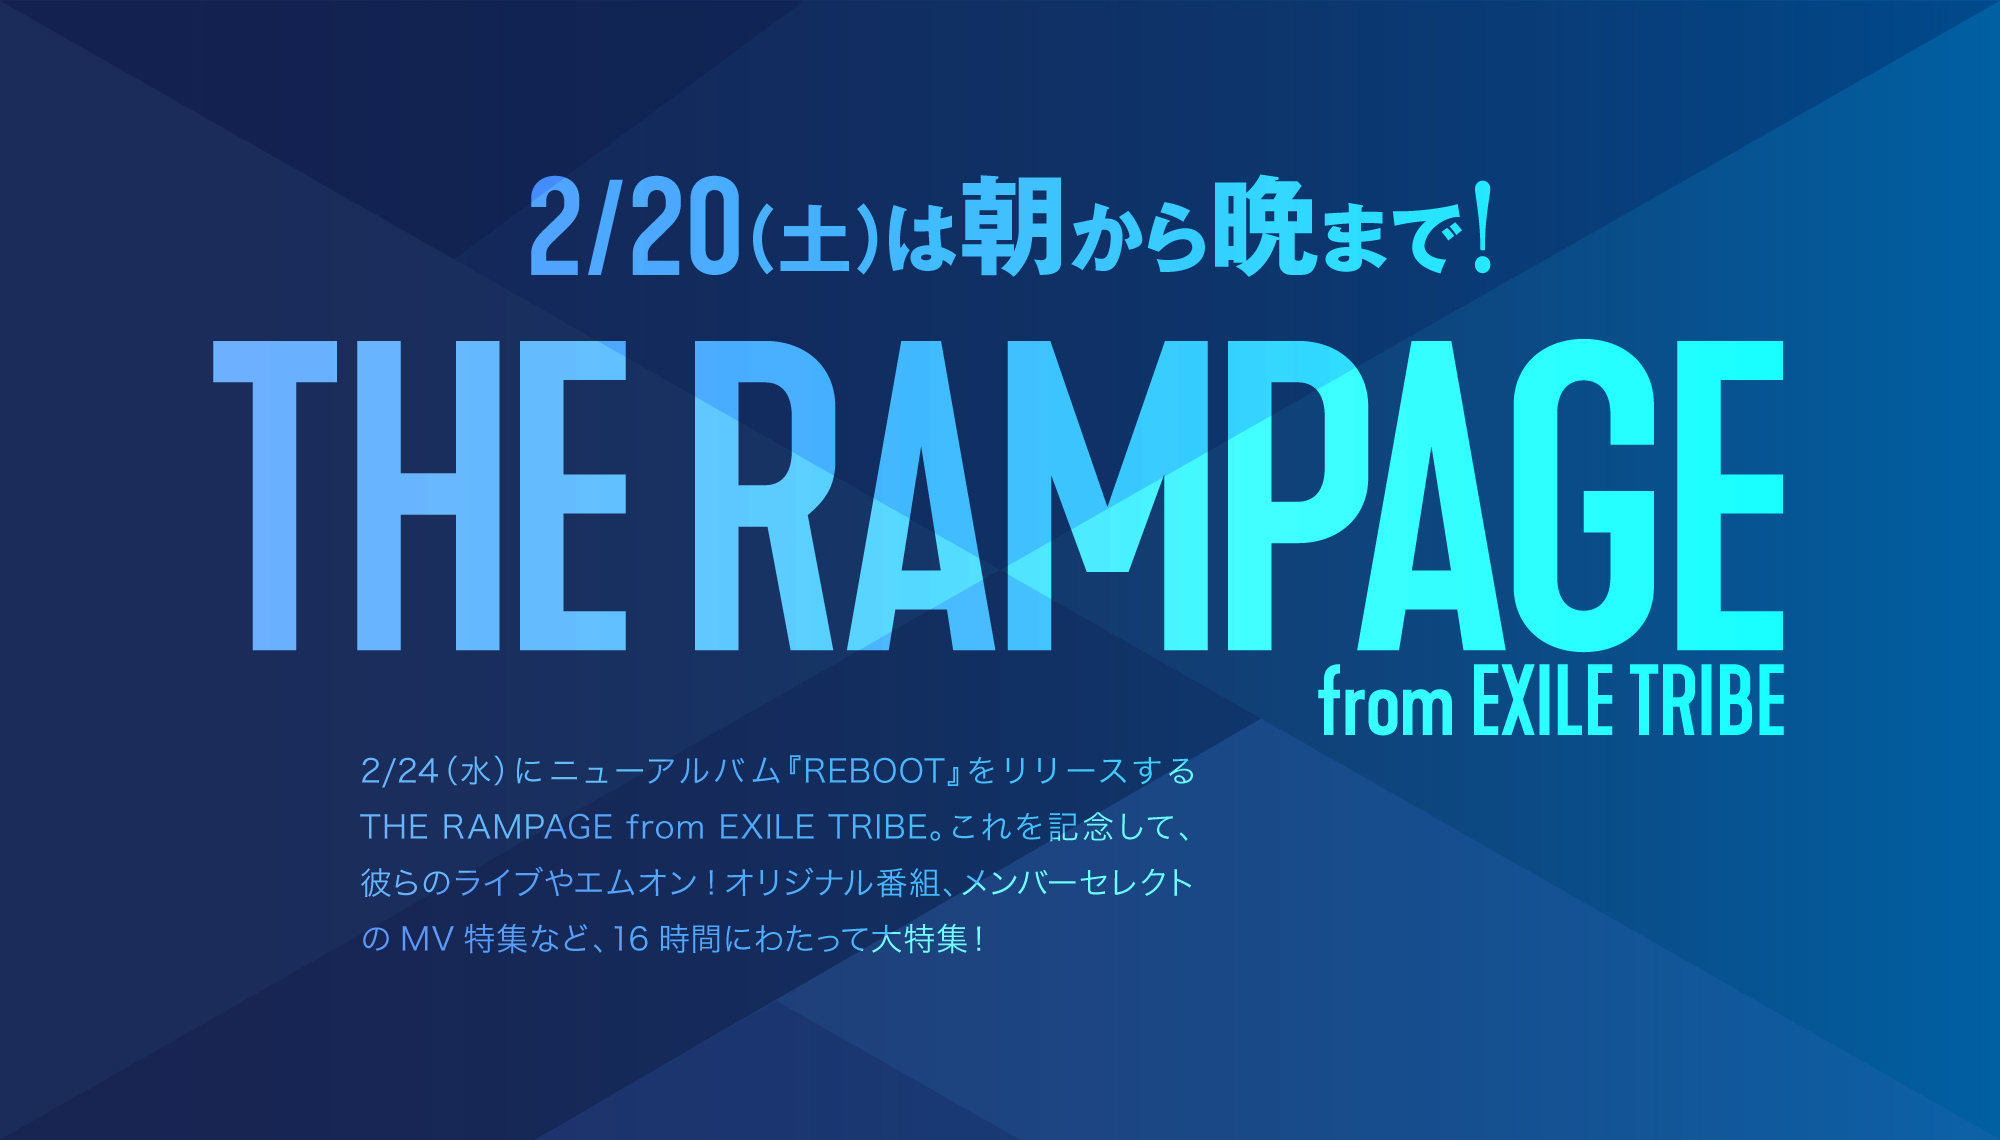 2017年1月にメジャーデビューを果たし、「RAMPAGE」の名のごとくステージを踊り暴れるHIPHOPテイストのパフォーマンスを武器に人気を集めている16人組ダンス&ボーカルグループ、THE RAMPAGE from EXILE TRIBE。
2/24(水)には、2021年の華々しいスタートを飾る作品として3rdアルバム『REBOOT』を発売する。
MUSIC ON! TV（エムオン!）では、このリリースを記念して、朝から晩までTHE RAMPAGE from EXILE TRIBEを大特集！2/20(土)朝8時から夜12時まで、16時間にわたって彼らの番組を放送する。
気になる放送番組は、2017年から2018年にかけて行われた初の全国ツアー、2019年に行われた初アリーナツアーの模様や、リリースを記念したオリジナル特番、16人のメンバーそれぞれがセレクトしたミュージックビデオを放送する番組、さらにボーカルチーム3人による米・ニューヨークでの武者修行密着番組など、魅力的なコンテンツが満載となっている。
アルバム発売を目前に控えた週末は、エムオン!でランペを堪能しよう！